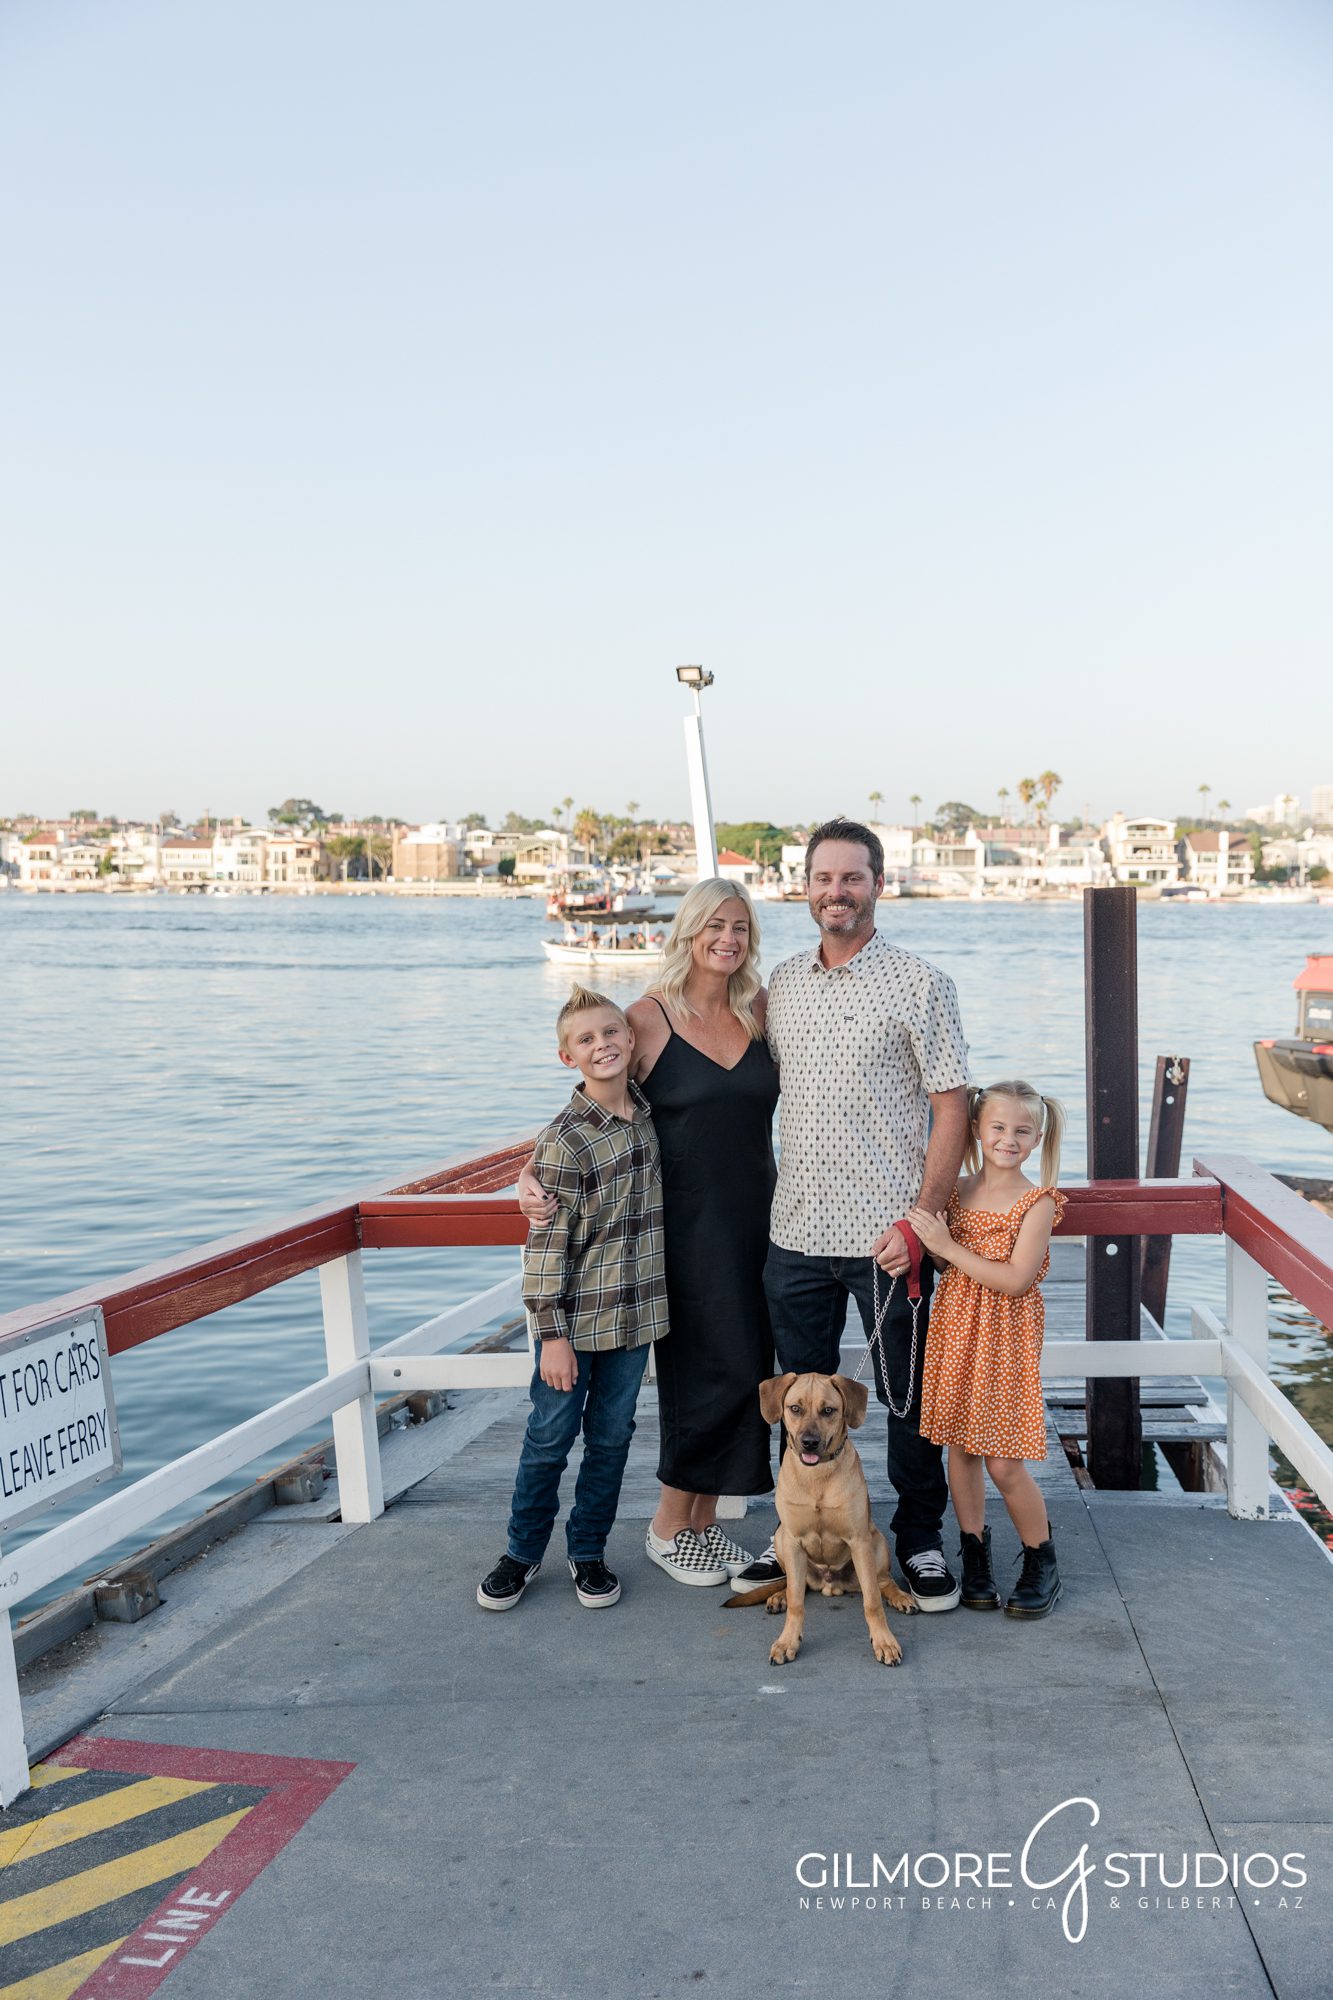 Balboa Fun Zone Family Portrait Photographer, Welcome to Balboa sign, Balboa Ferris Wheel, Balboa Ferry, pier, Jane's corn dogs, Balboa ice cream bar, Newport Beach, CA